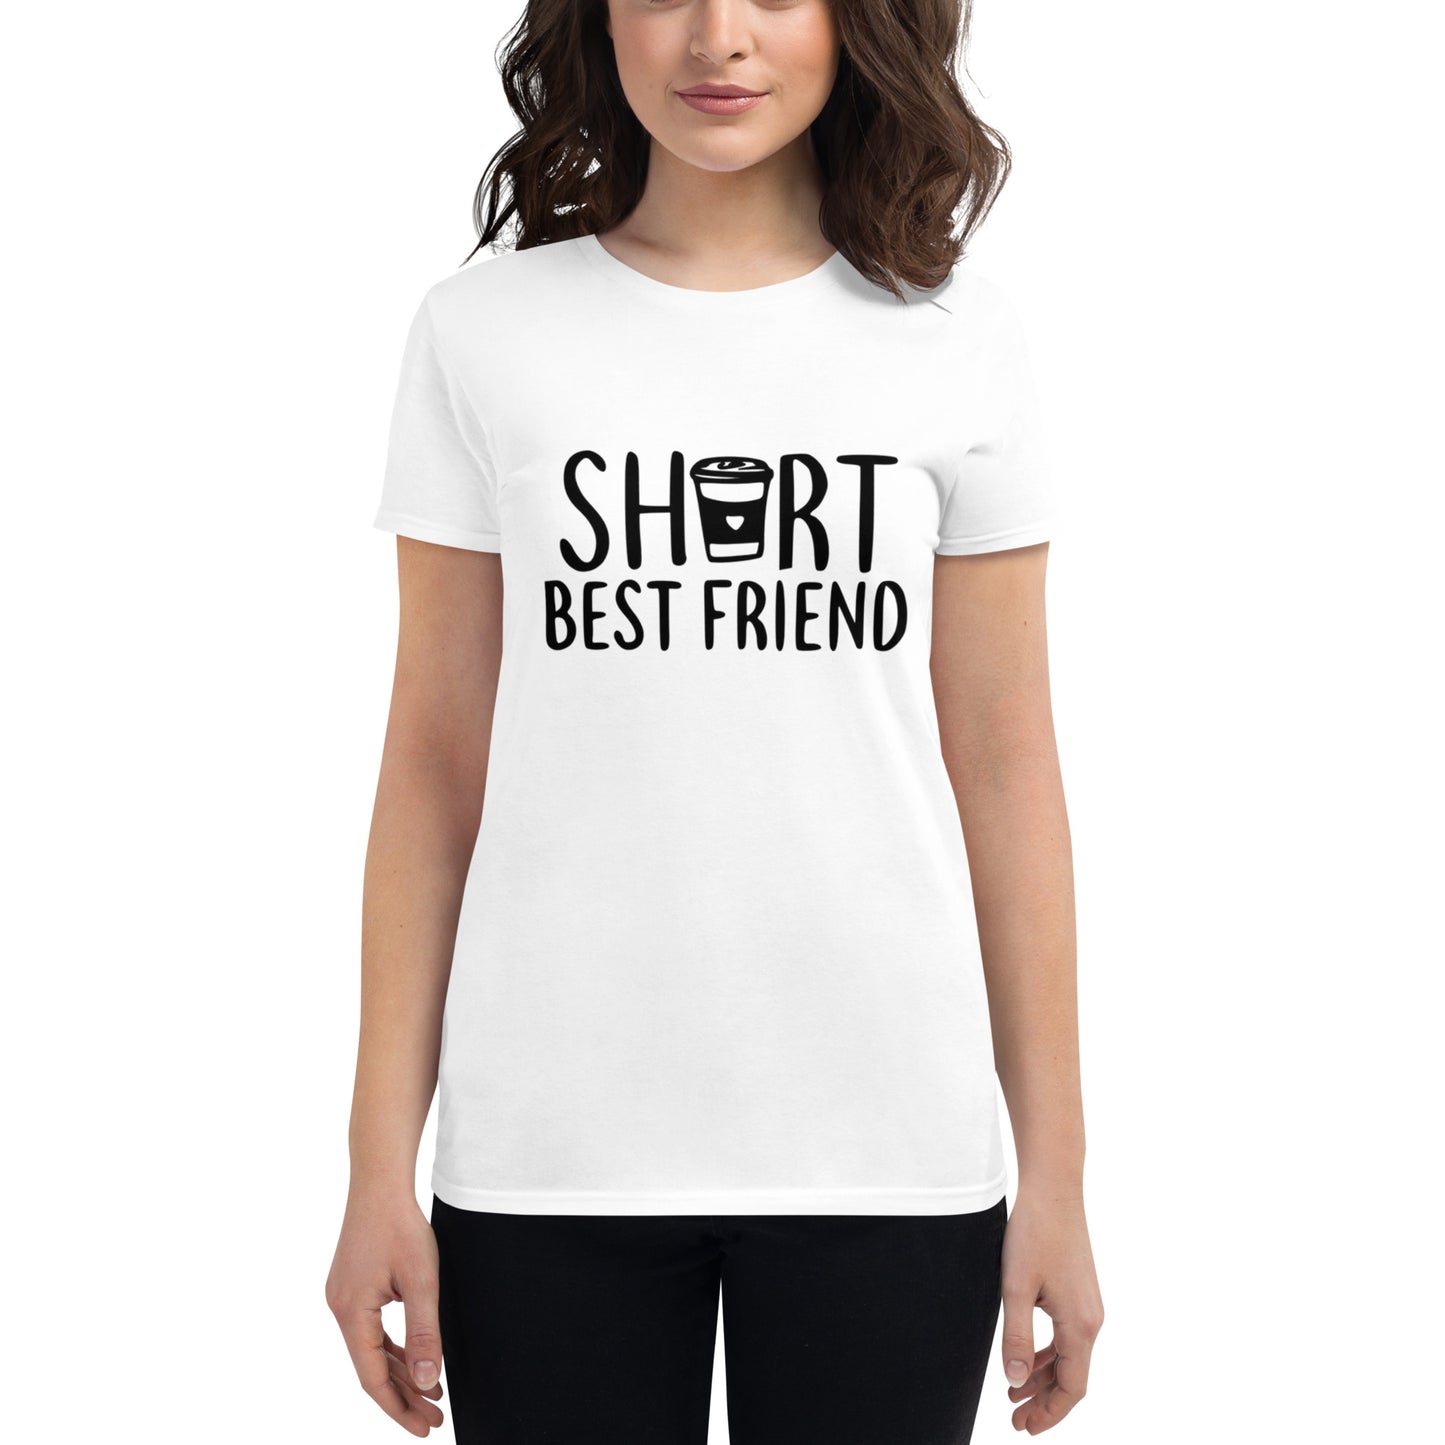 Short Best Friend T-shirt